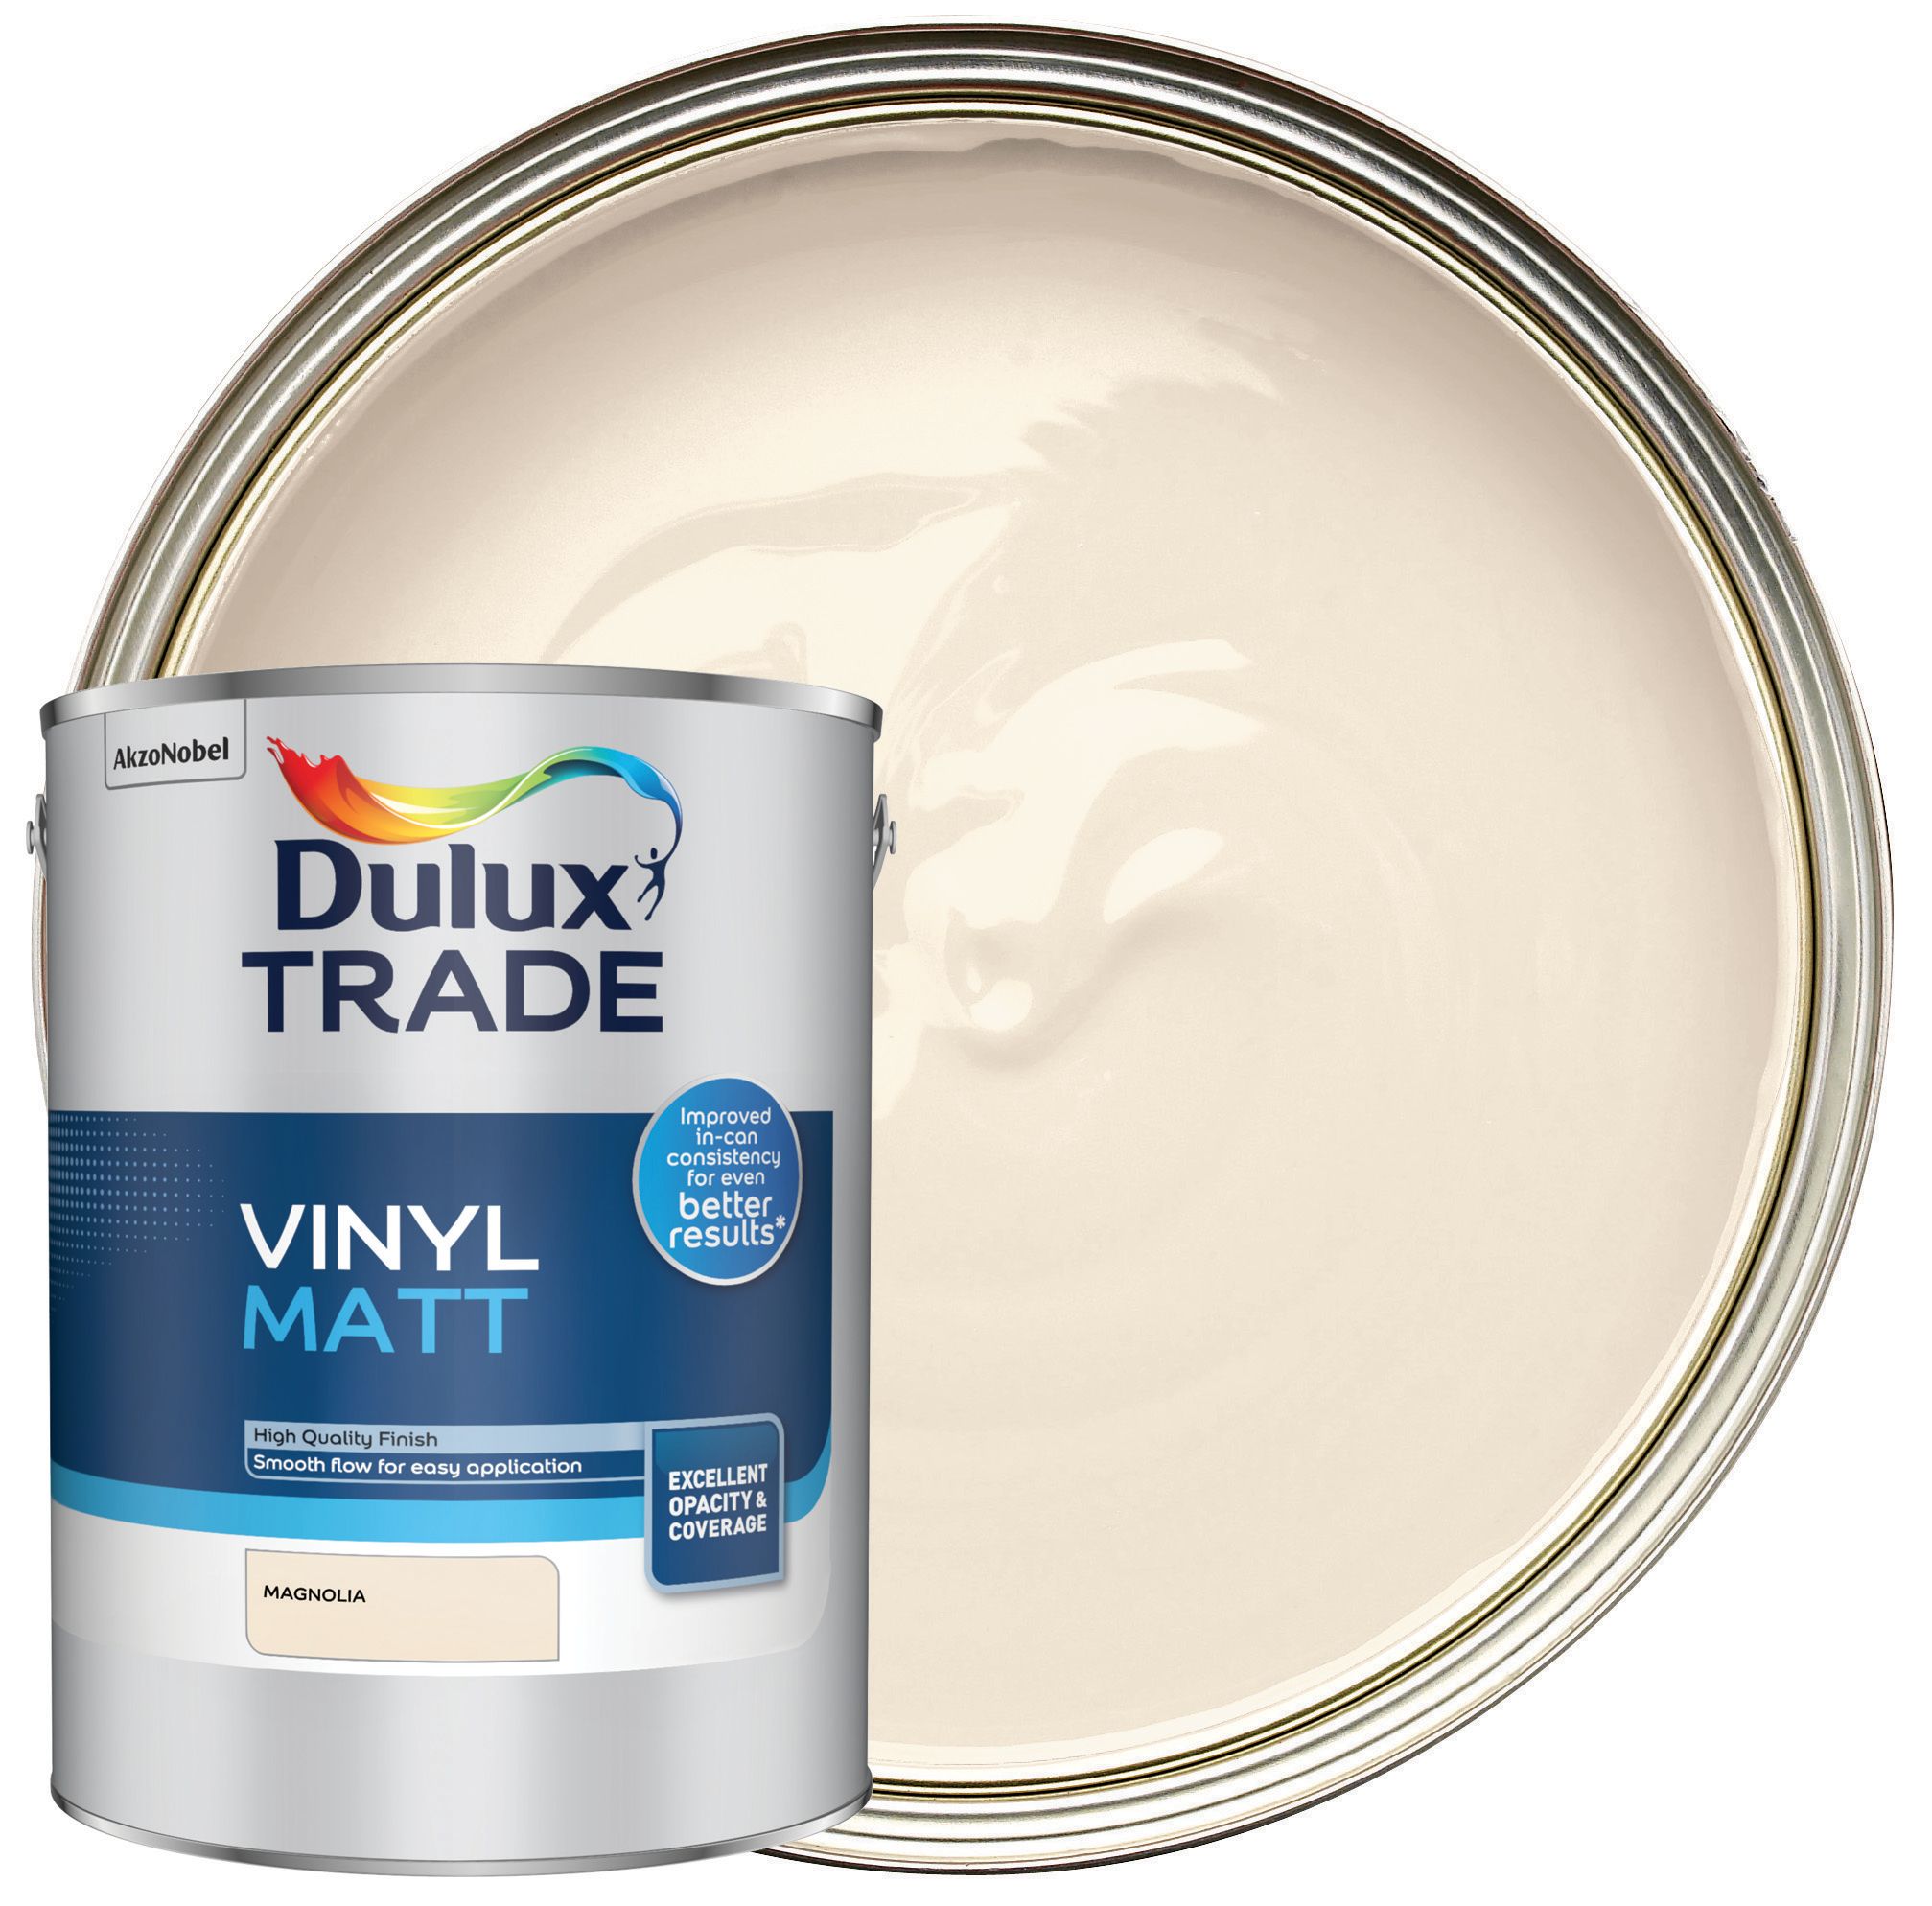 Image of Dulux Trade Vinyl Matt Emulsion Paint - Magnolia - 5L